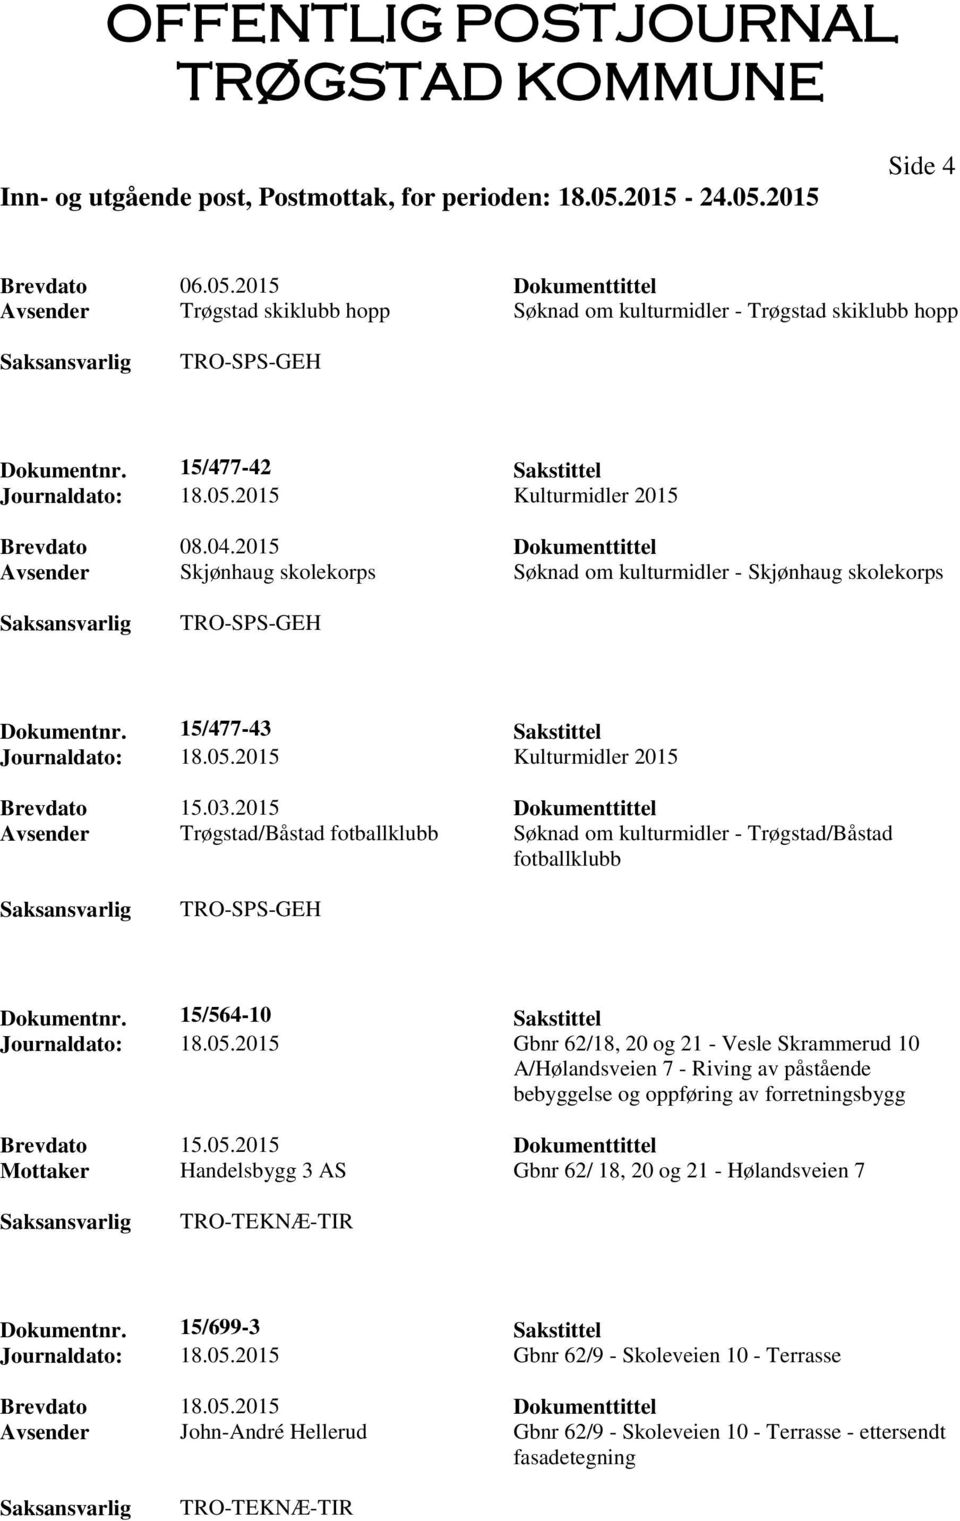 03.2015 Dokumenttittel Avsender Trøgstad/Båstad fotballklubb Søknad om kulturmidler - Trøgstad/Båstad fotballklubb TRO-SPS-GEH Dokumentnr. 15/564-10 Sakstittel Journaldato: 18.05.